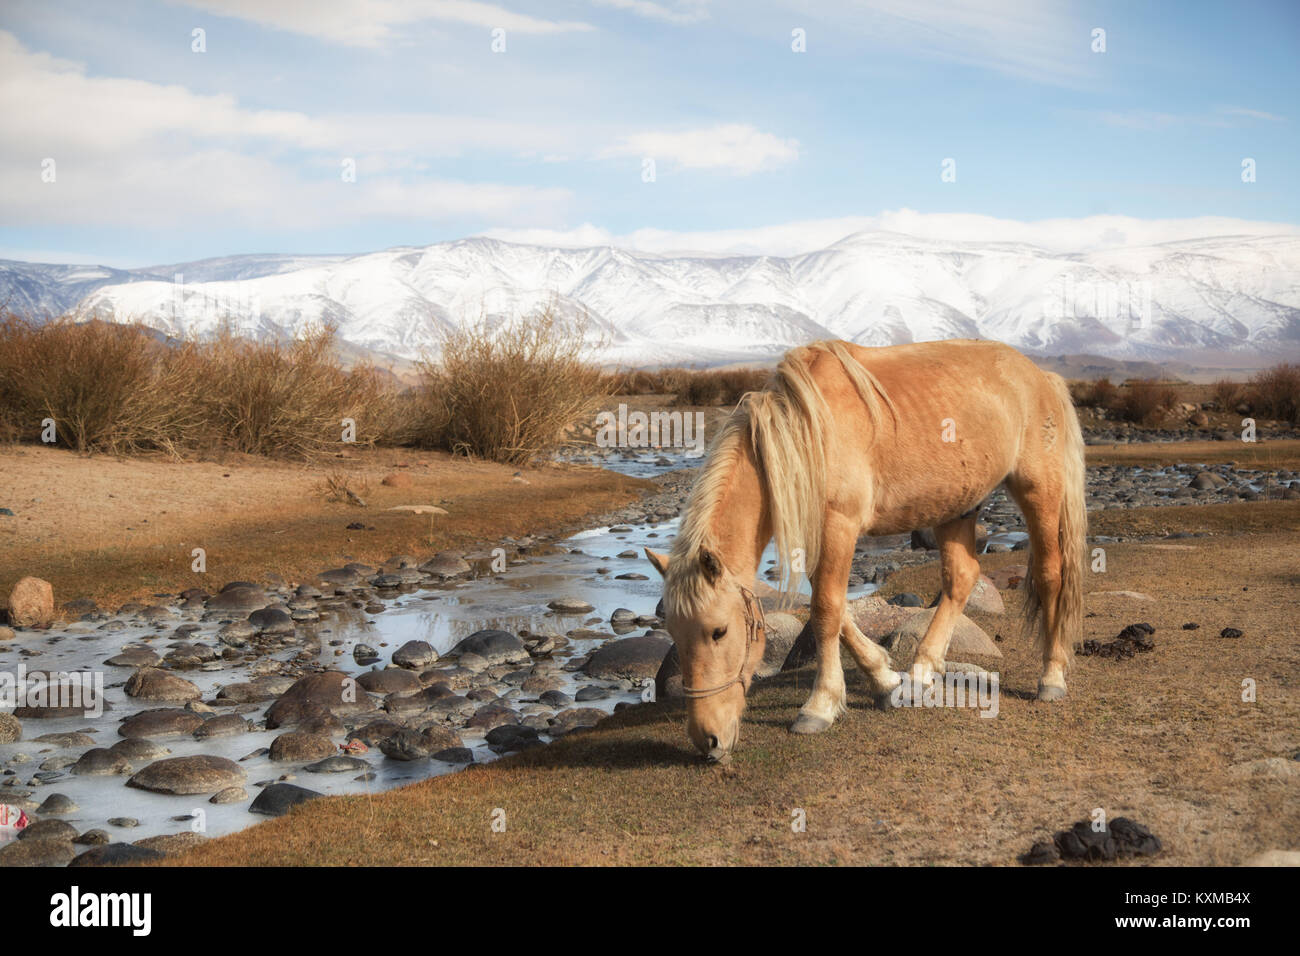 Il mongolo bionda cavallo Mongolia steppe praterie verdeggianti montagne innevate inverno Foto Stock